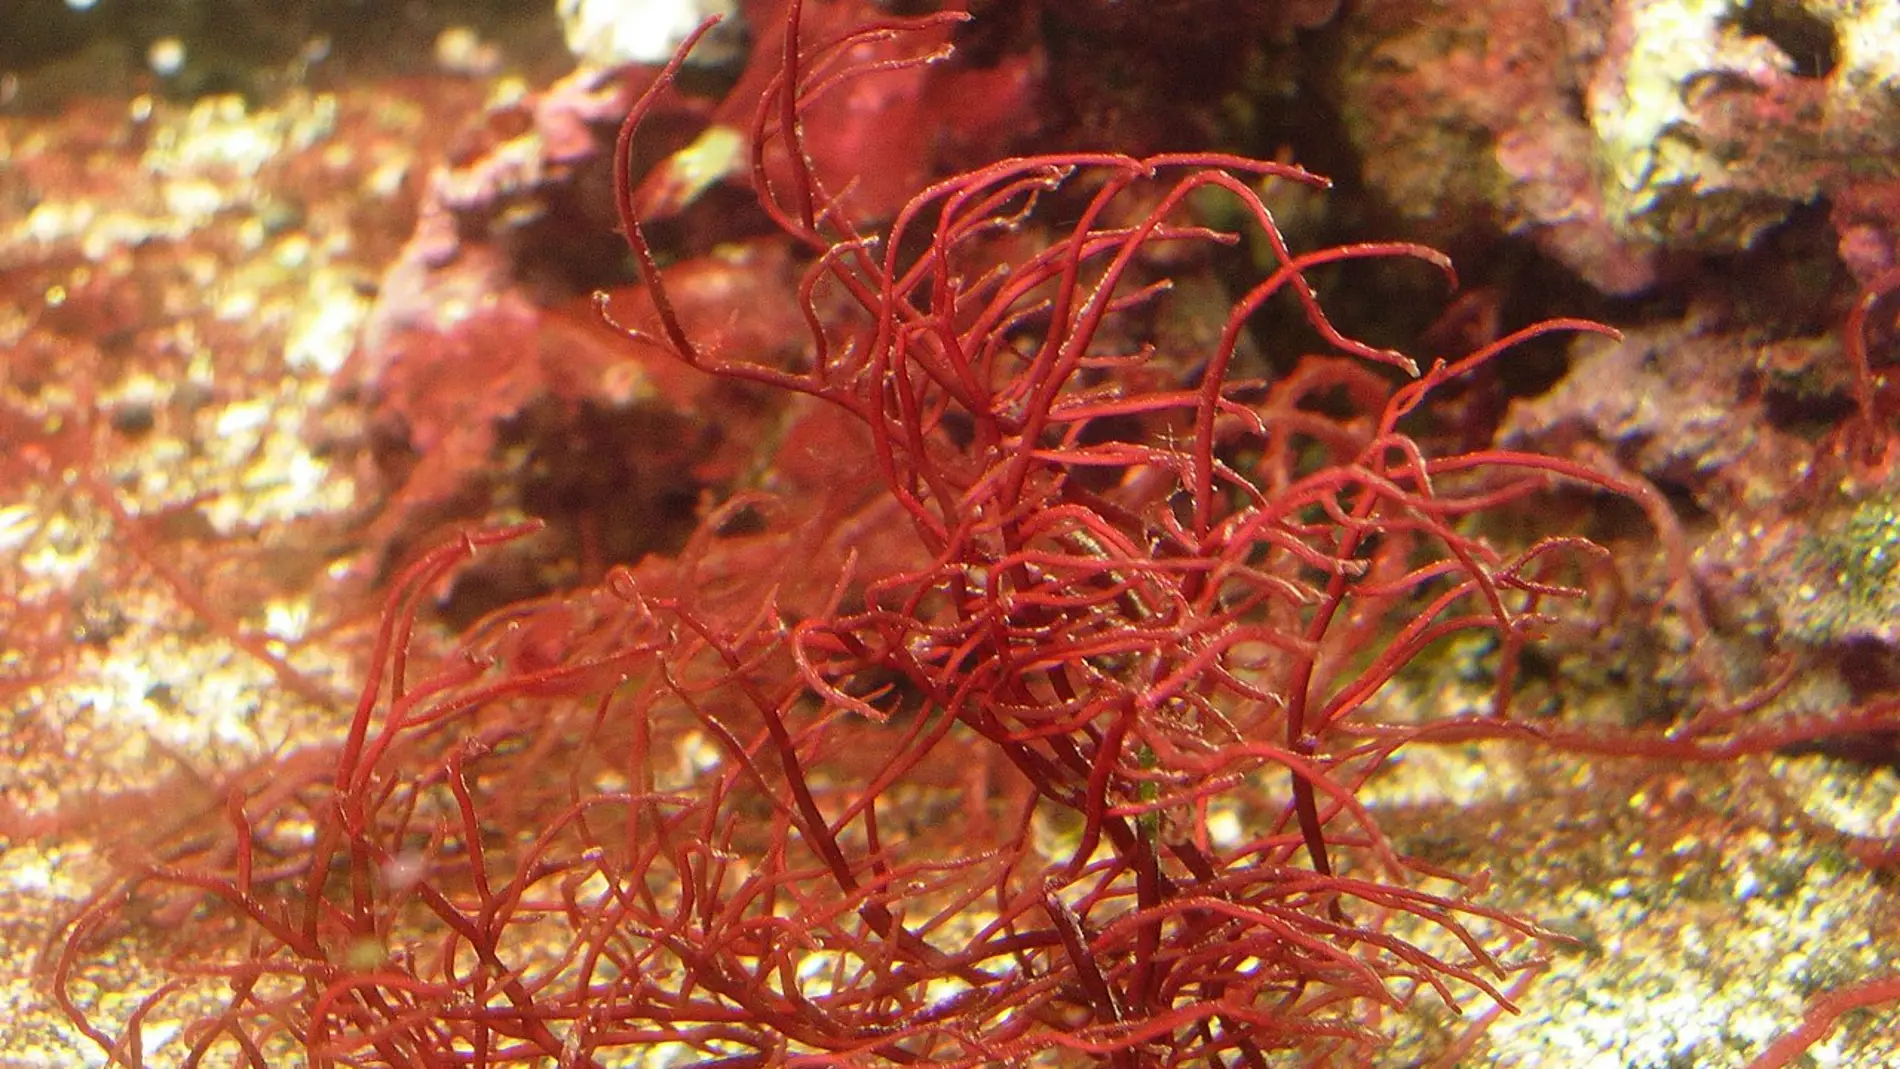 Un pequeno crustaceo marino poliniza las algas